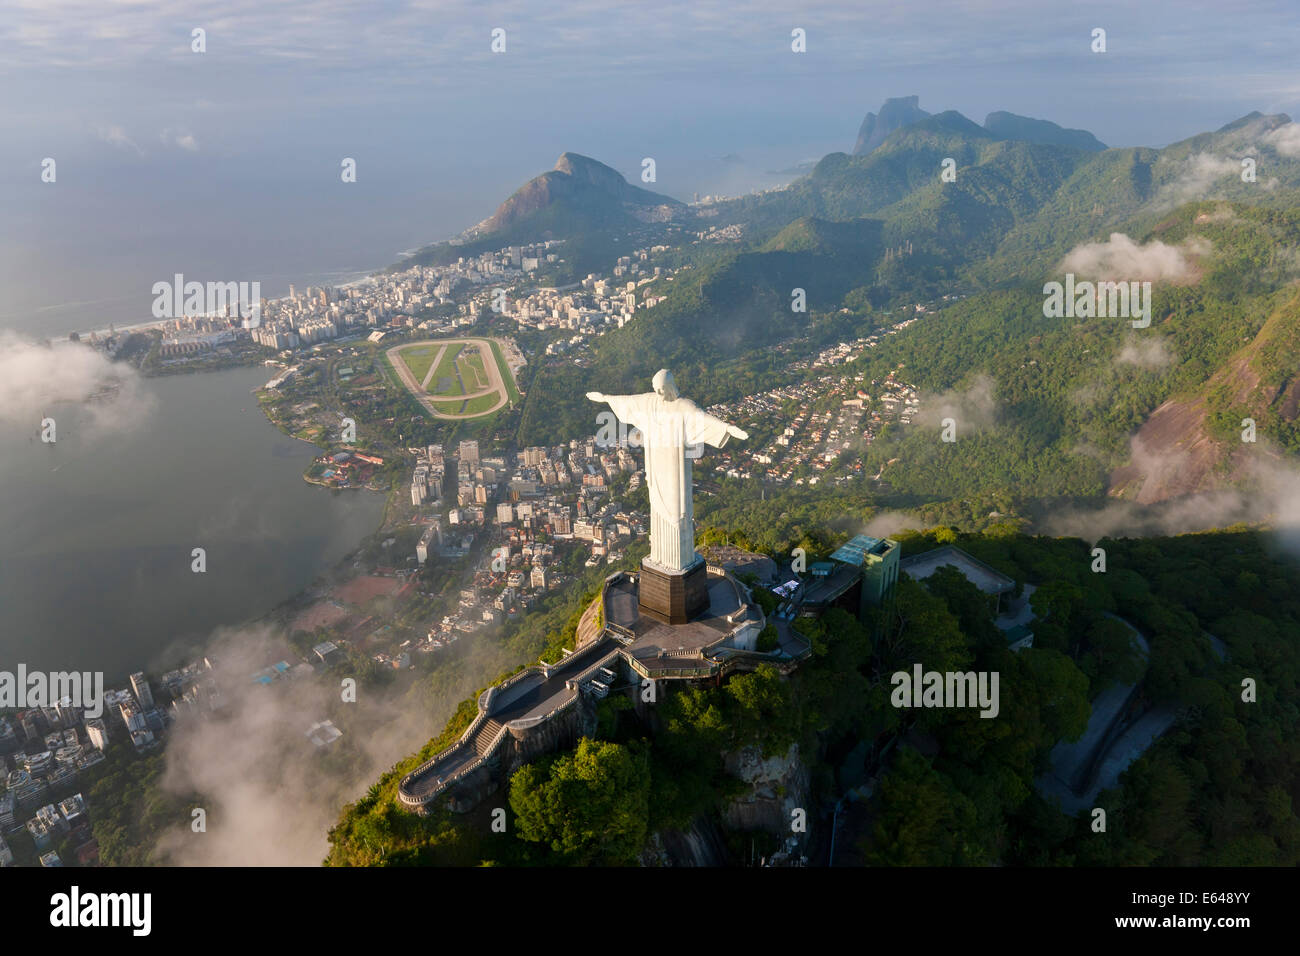 Il gigante Art Deco statua Gesù noto come Cristo Redentor (Cristo Redentore) sul monte Corcovado a Rio de Janeiro in Brasile. Foto Stock